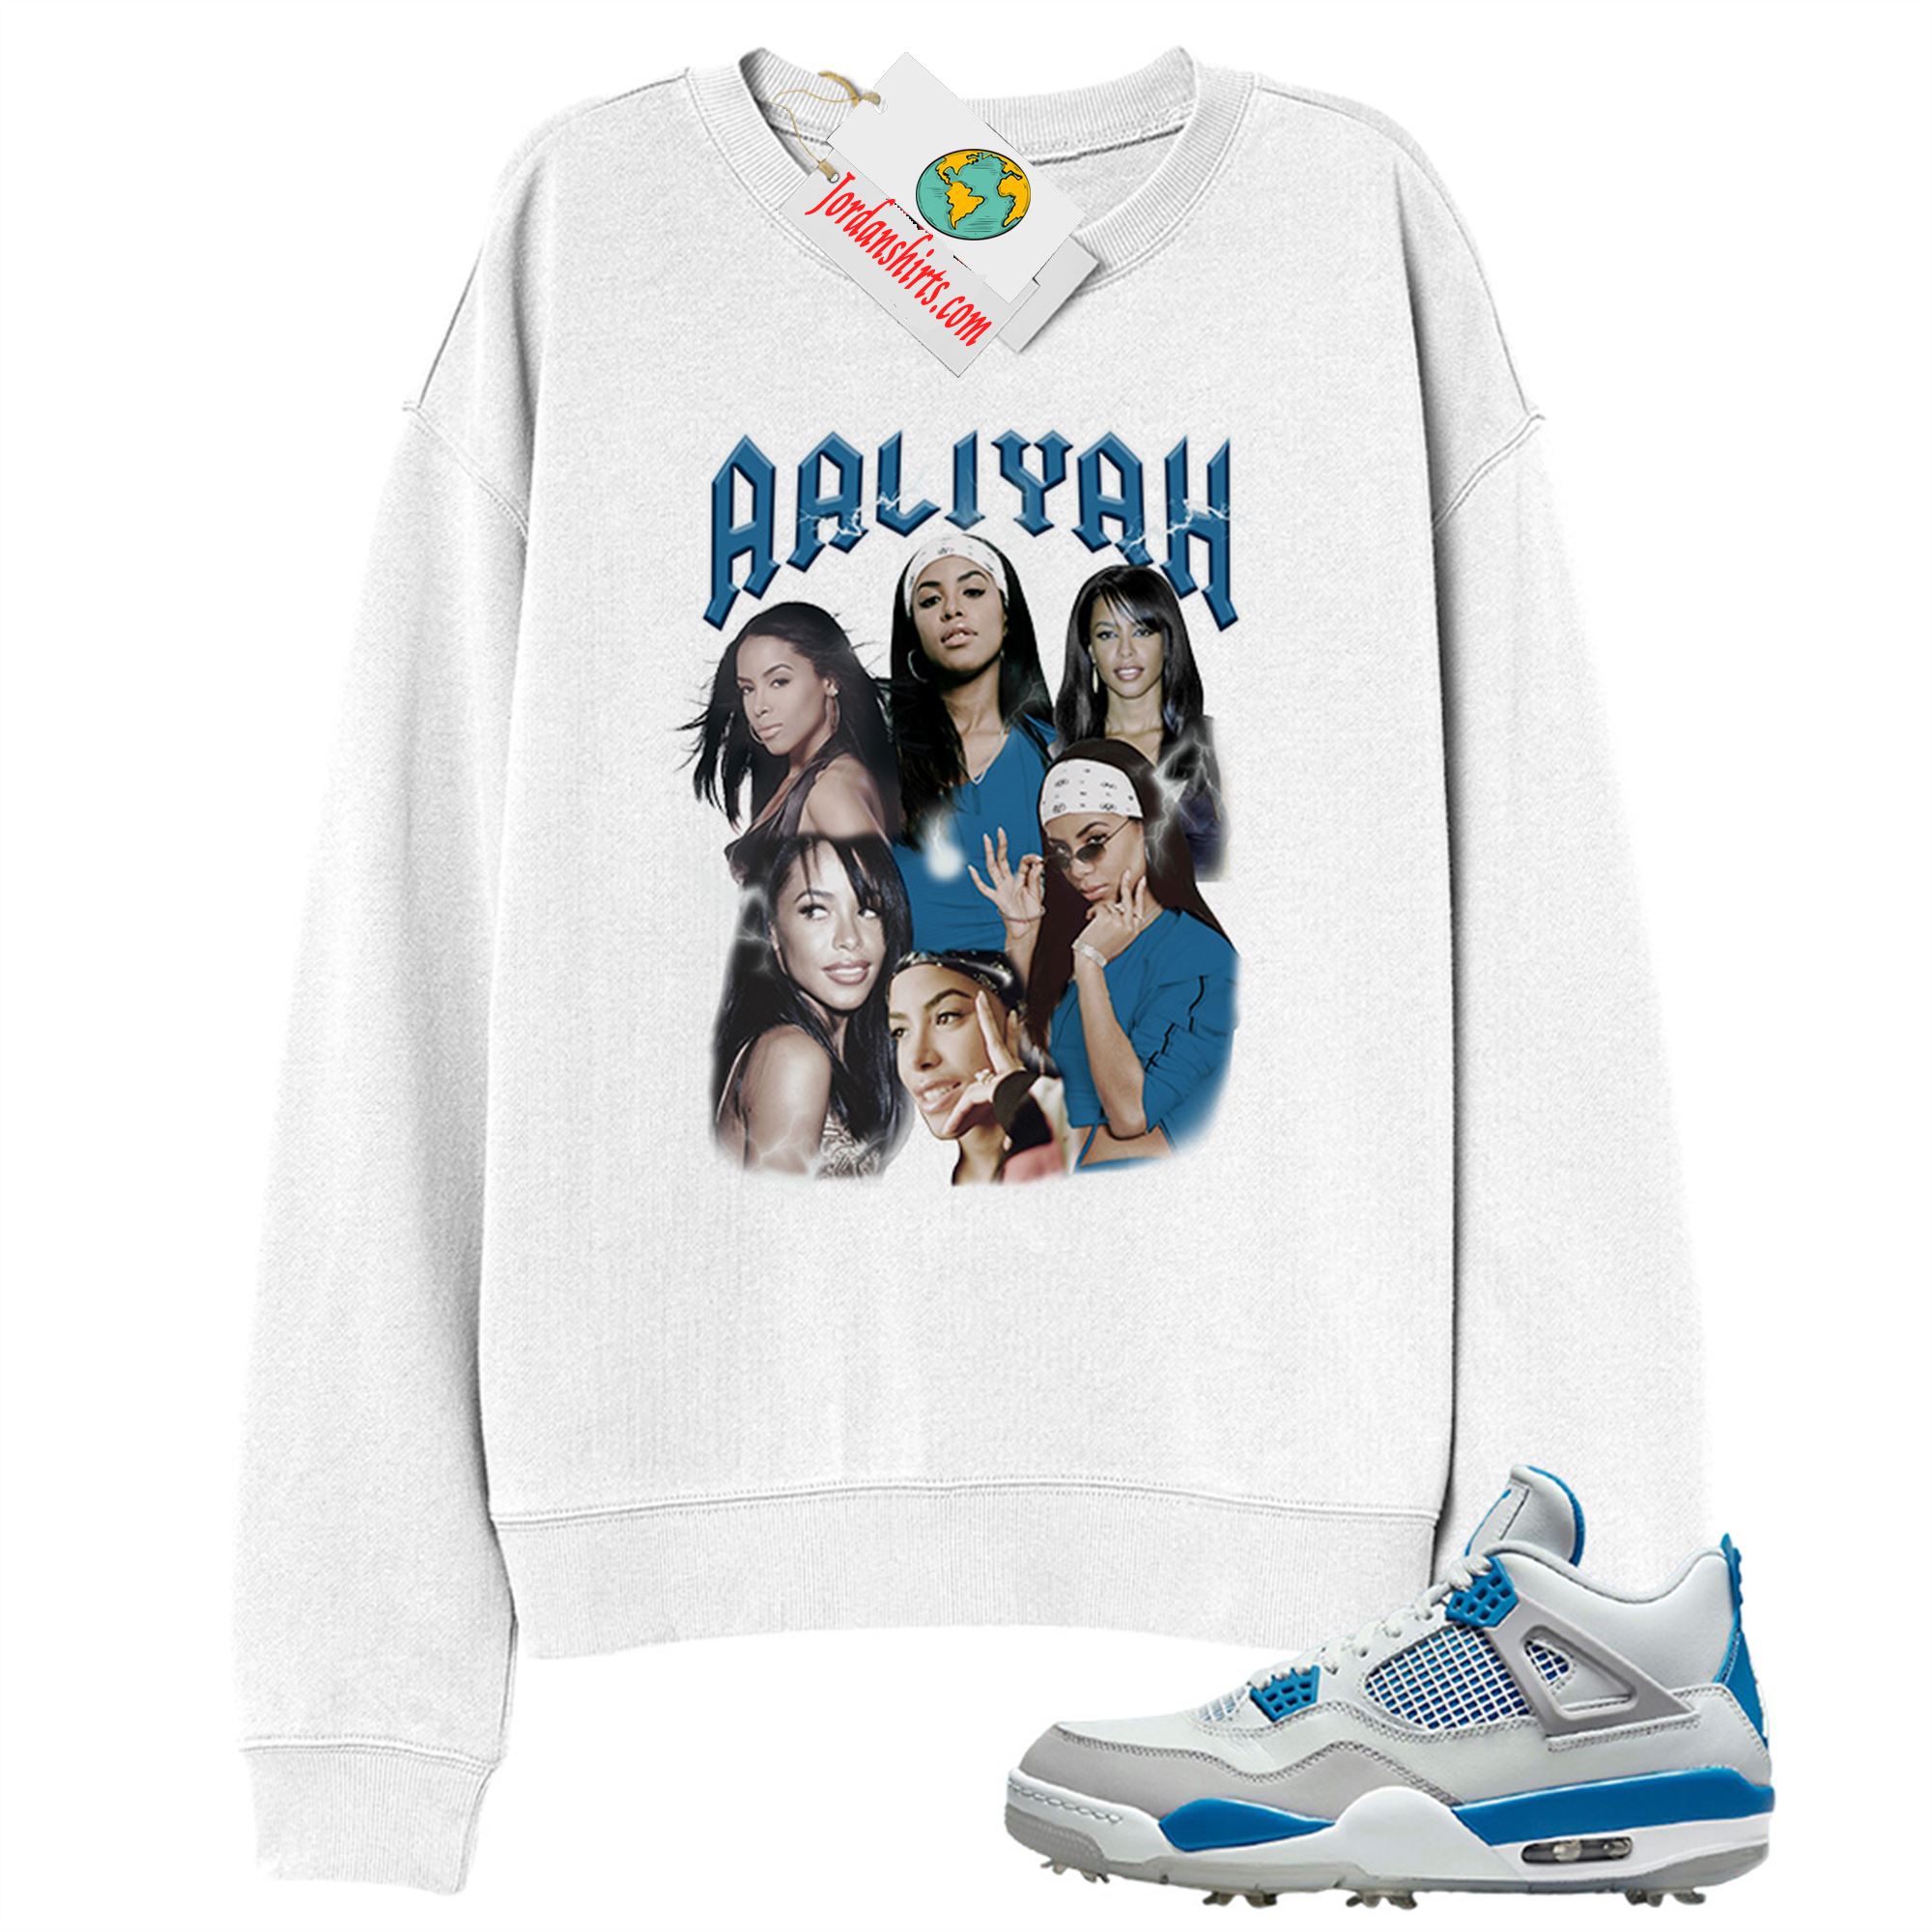 Jordan 4 Sweatshirt, Aaliyah Vintage White Sweatshirt Air Jordan 4 Golf Military Blue 4s Size Up To 5xl